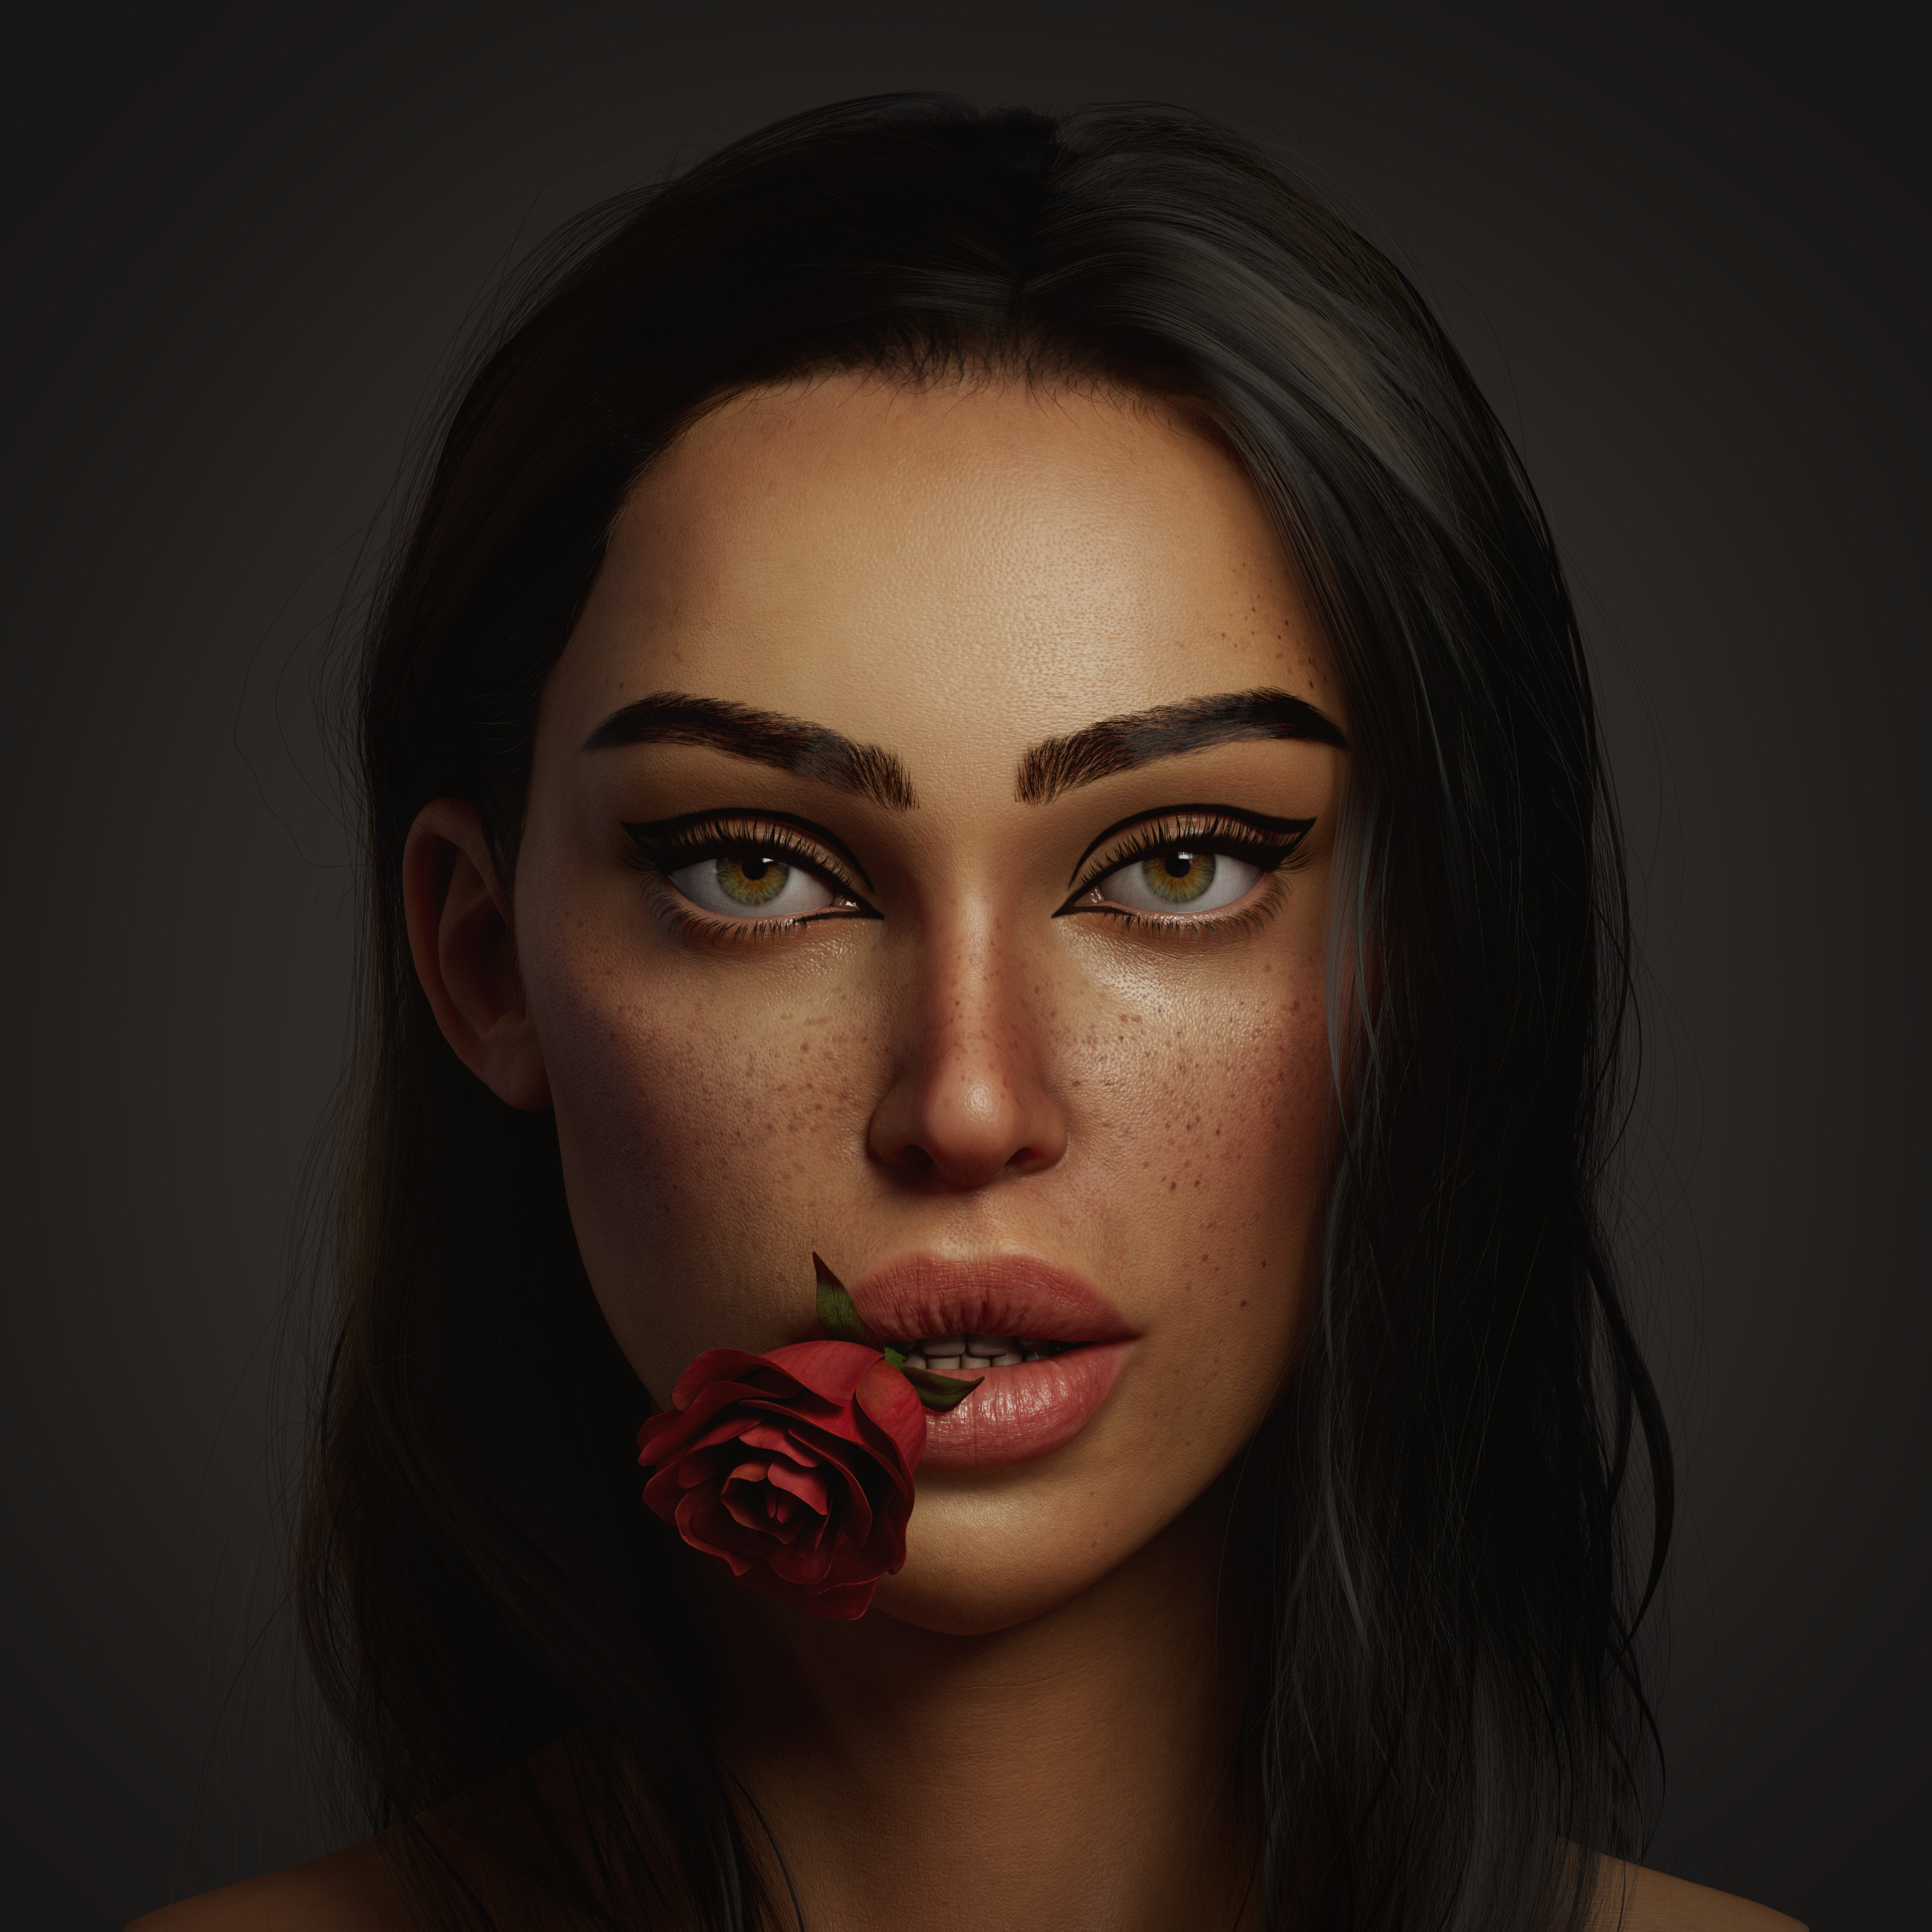 Mohamed Shalan Face Women Portrait Closeup Digital Art Looking At Viewer 3072x3072